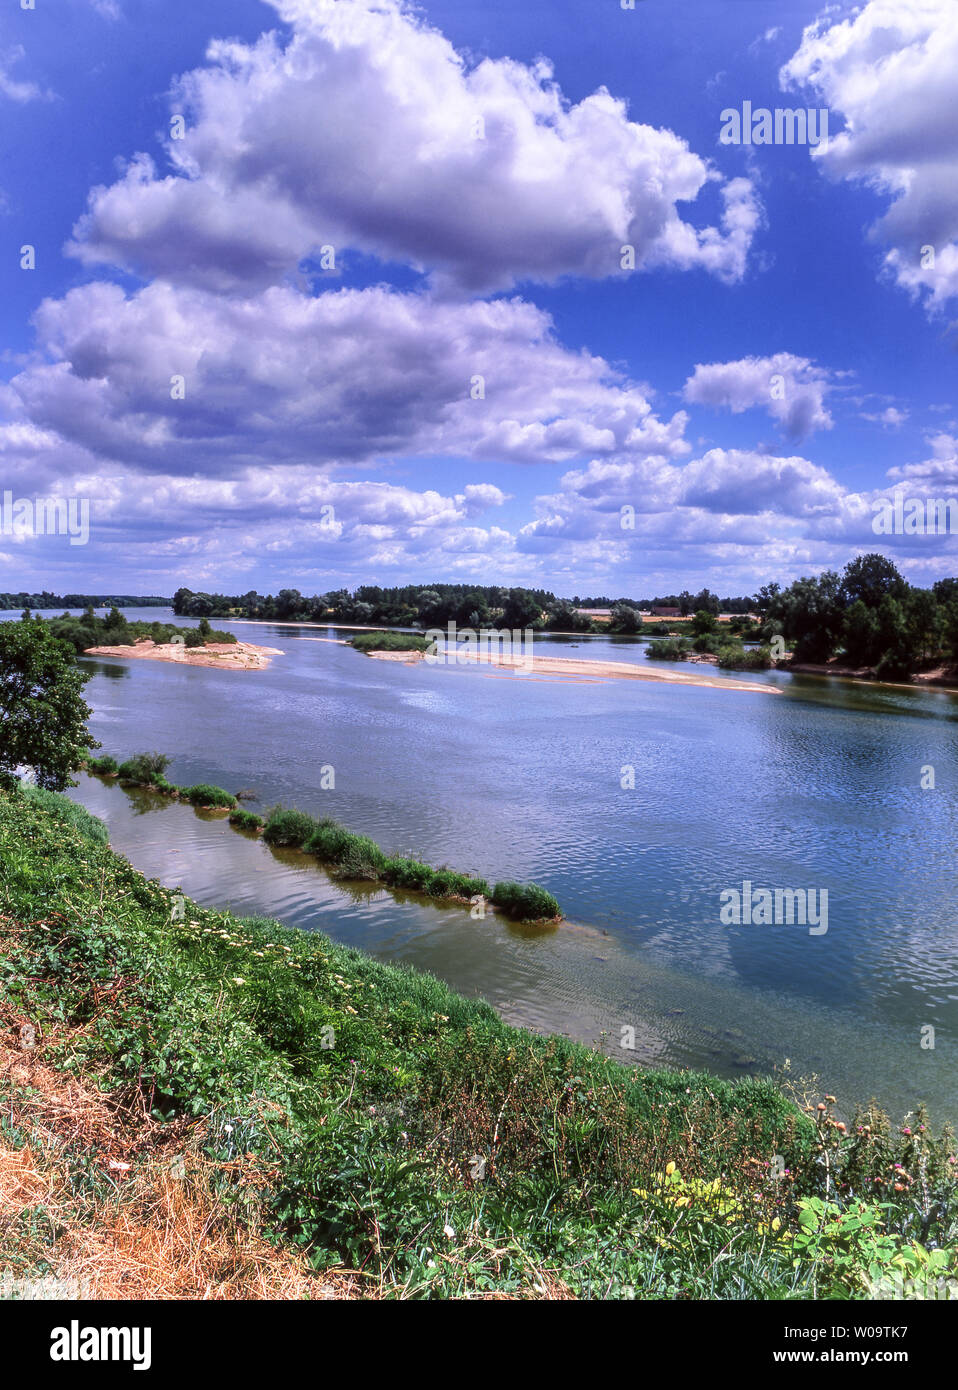 Frankreich. Die Loire in der Nähe der Stadt Blois. Dept Loire et Cher. Die einzige 'Wilden' großen Fluss in Frankreich. Stockfoto